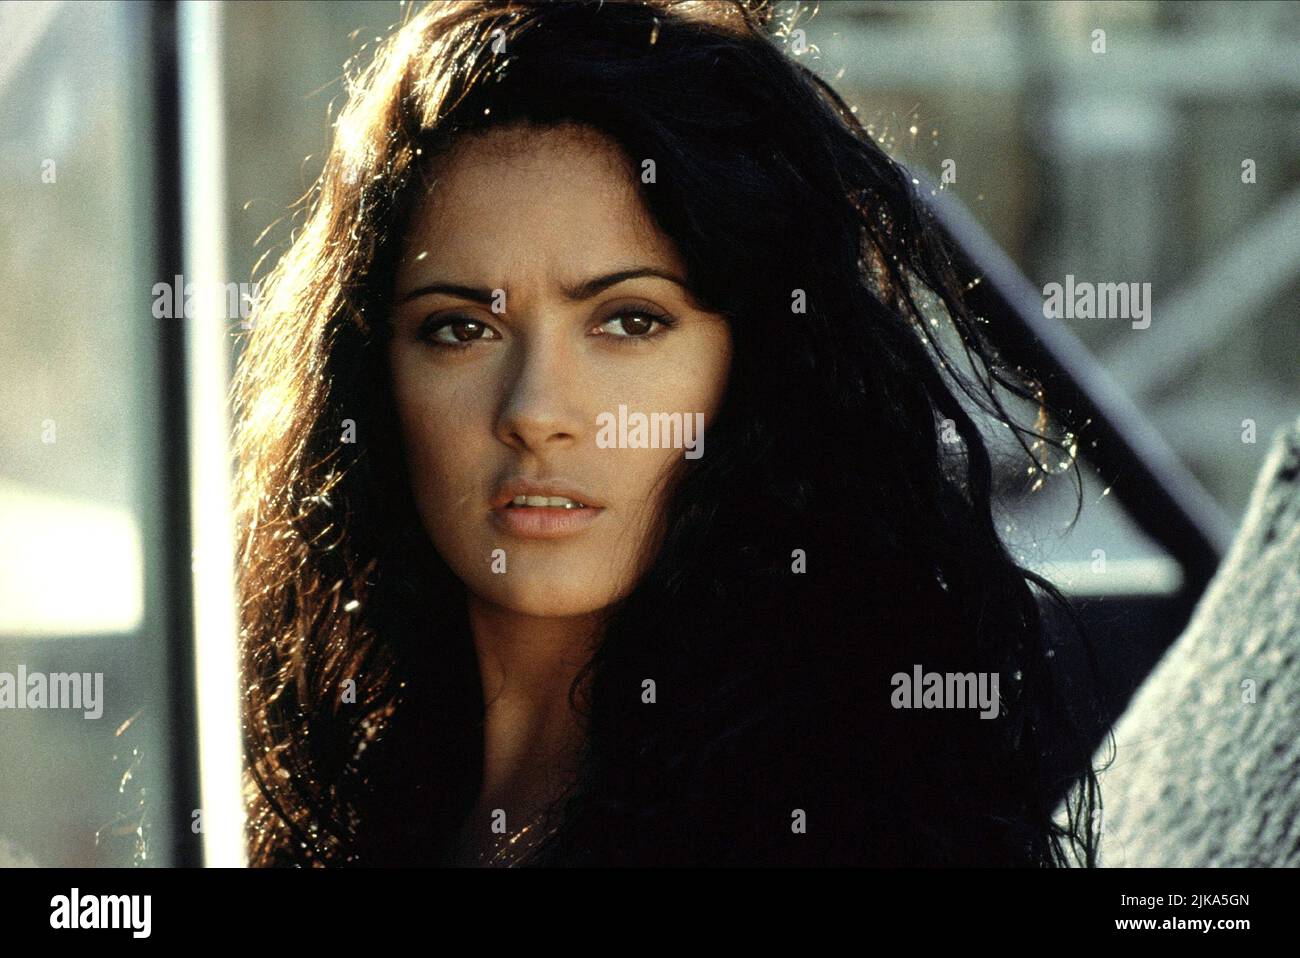 Desperado movie still, 1995. Salma Hayek as Carolina.